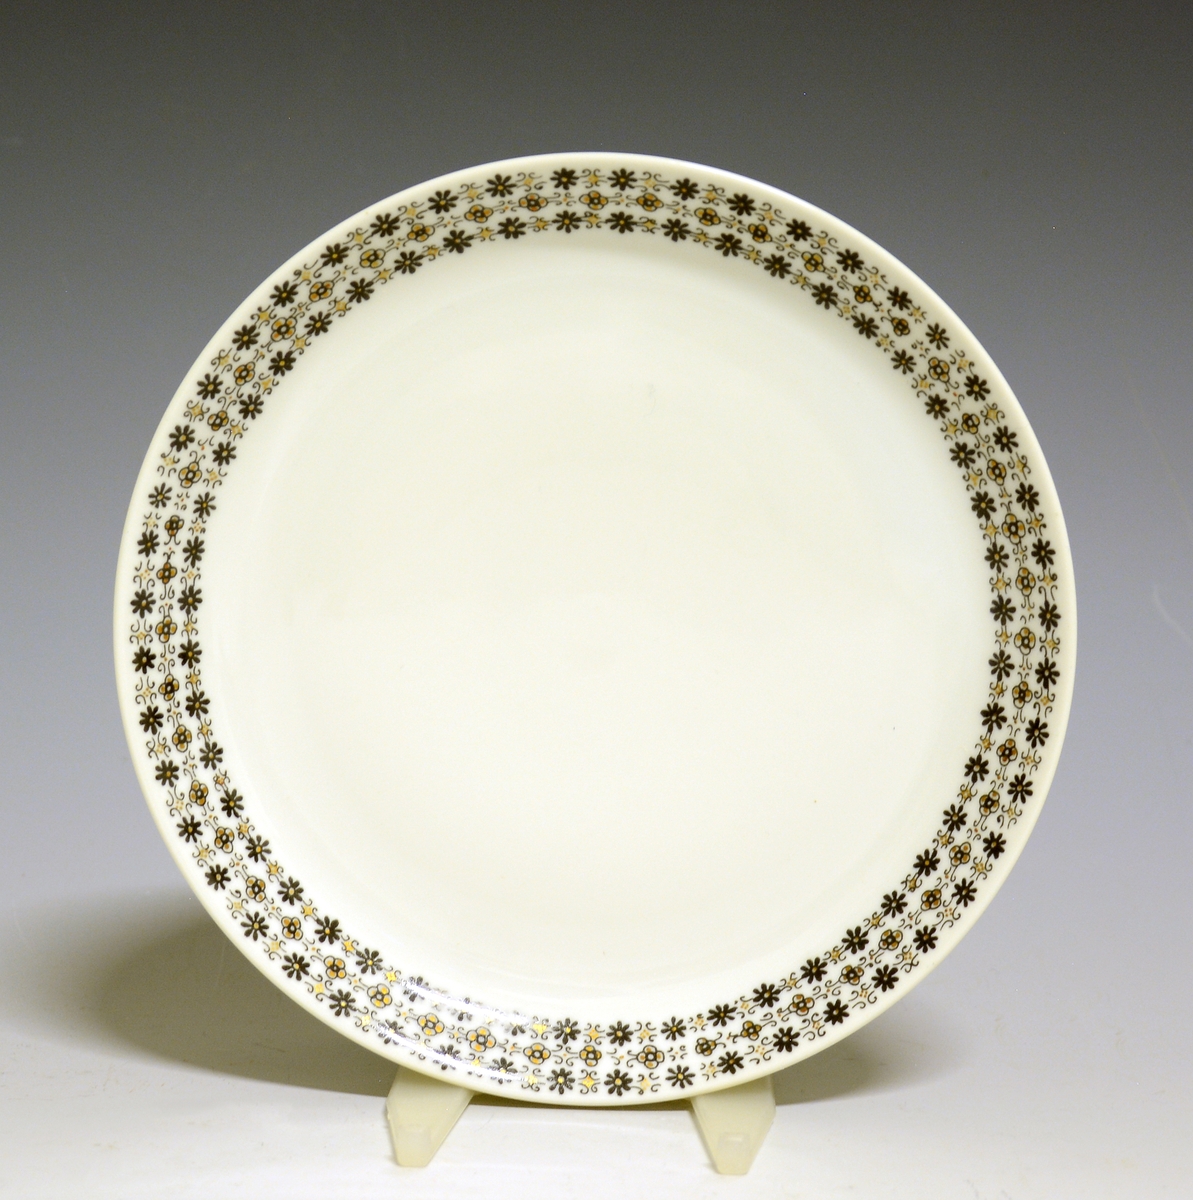 Asjett av porselen med hvit glasur og bord med småblomstret trykkdekor i sort og gull langs kanten.
Modell: Petita (eller variant av)